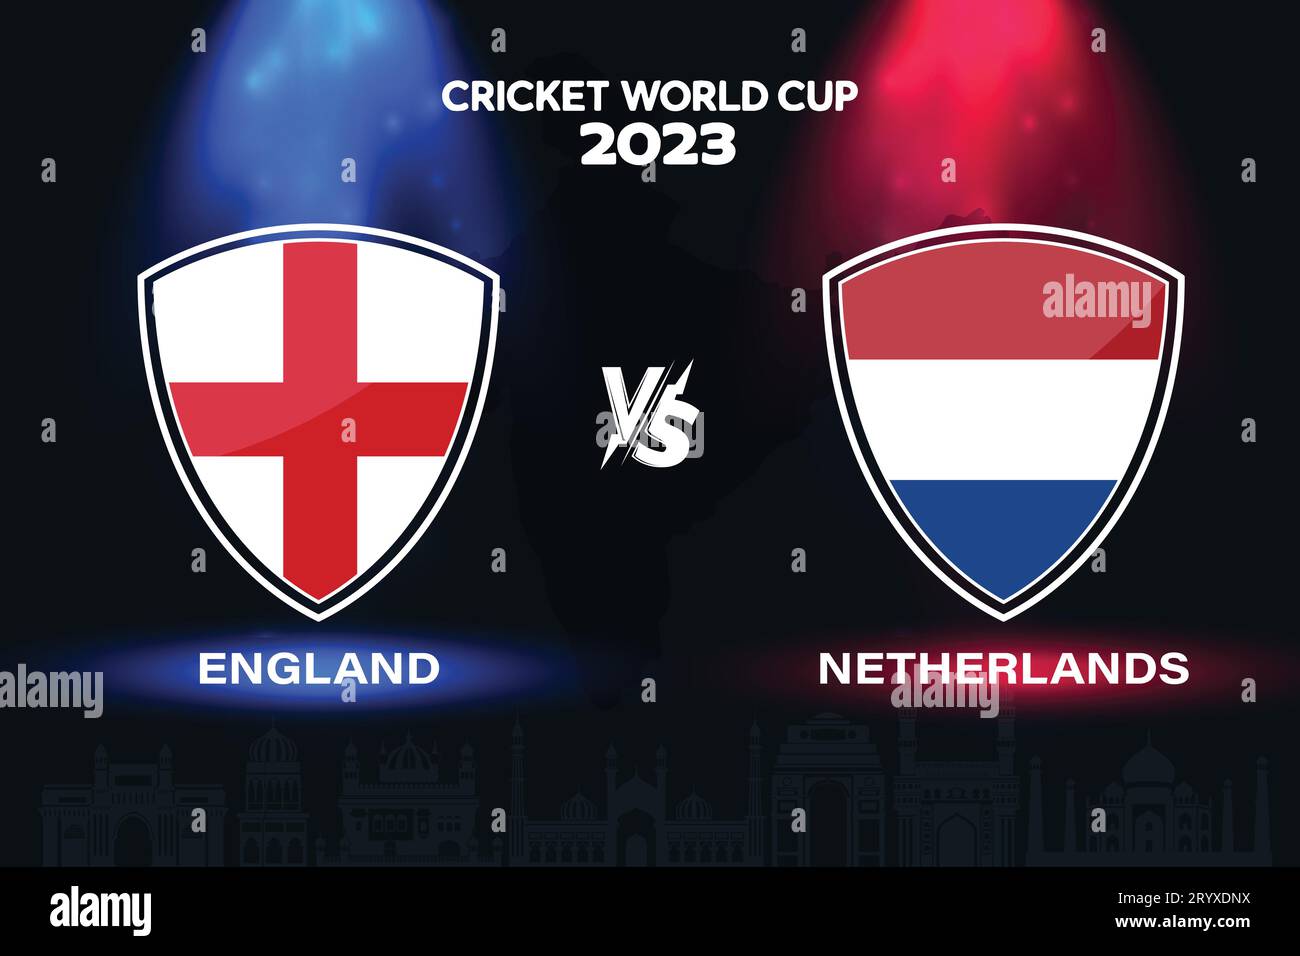 Angleterre vs pays-Bas logo du drapeau international de cricket sur fond d'horizon indien pour la finale de la coupe du monde 2023. Vecteur EPS pour match sportif Illustration de Vecteur